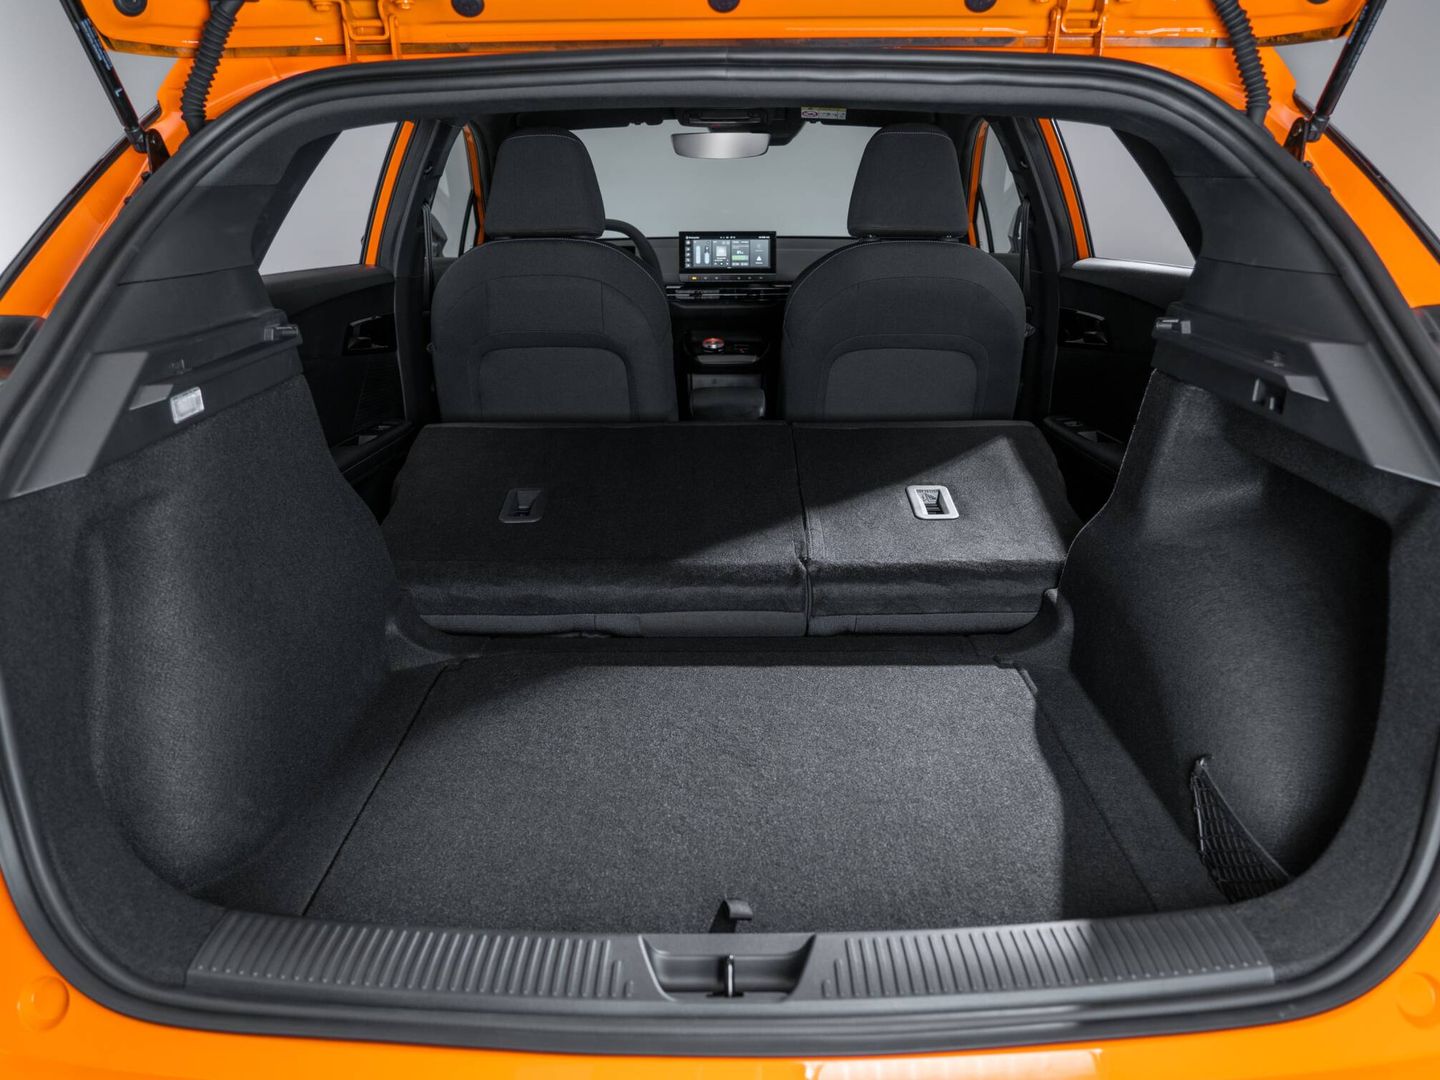 En las versiones Standard y Comfort, el maletero es de 363 litros, ampliable a 1.177 litros.